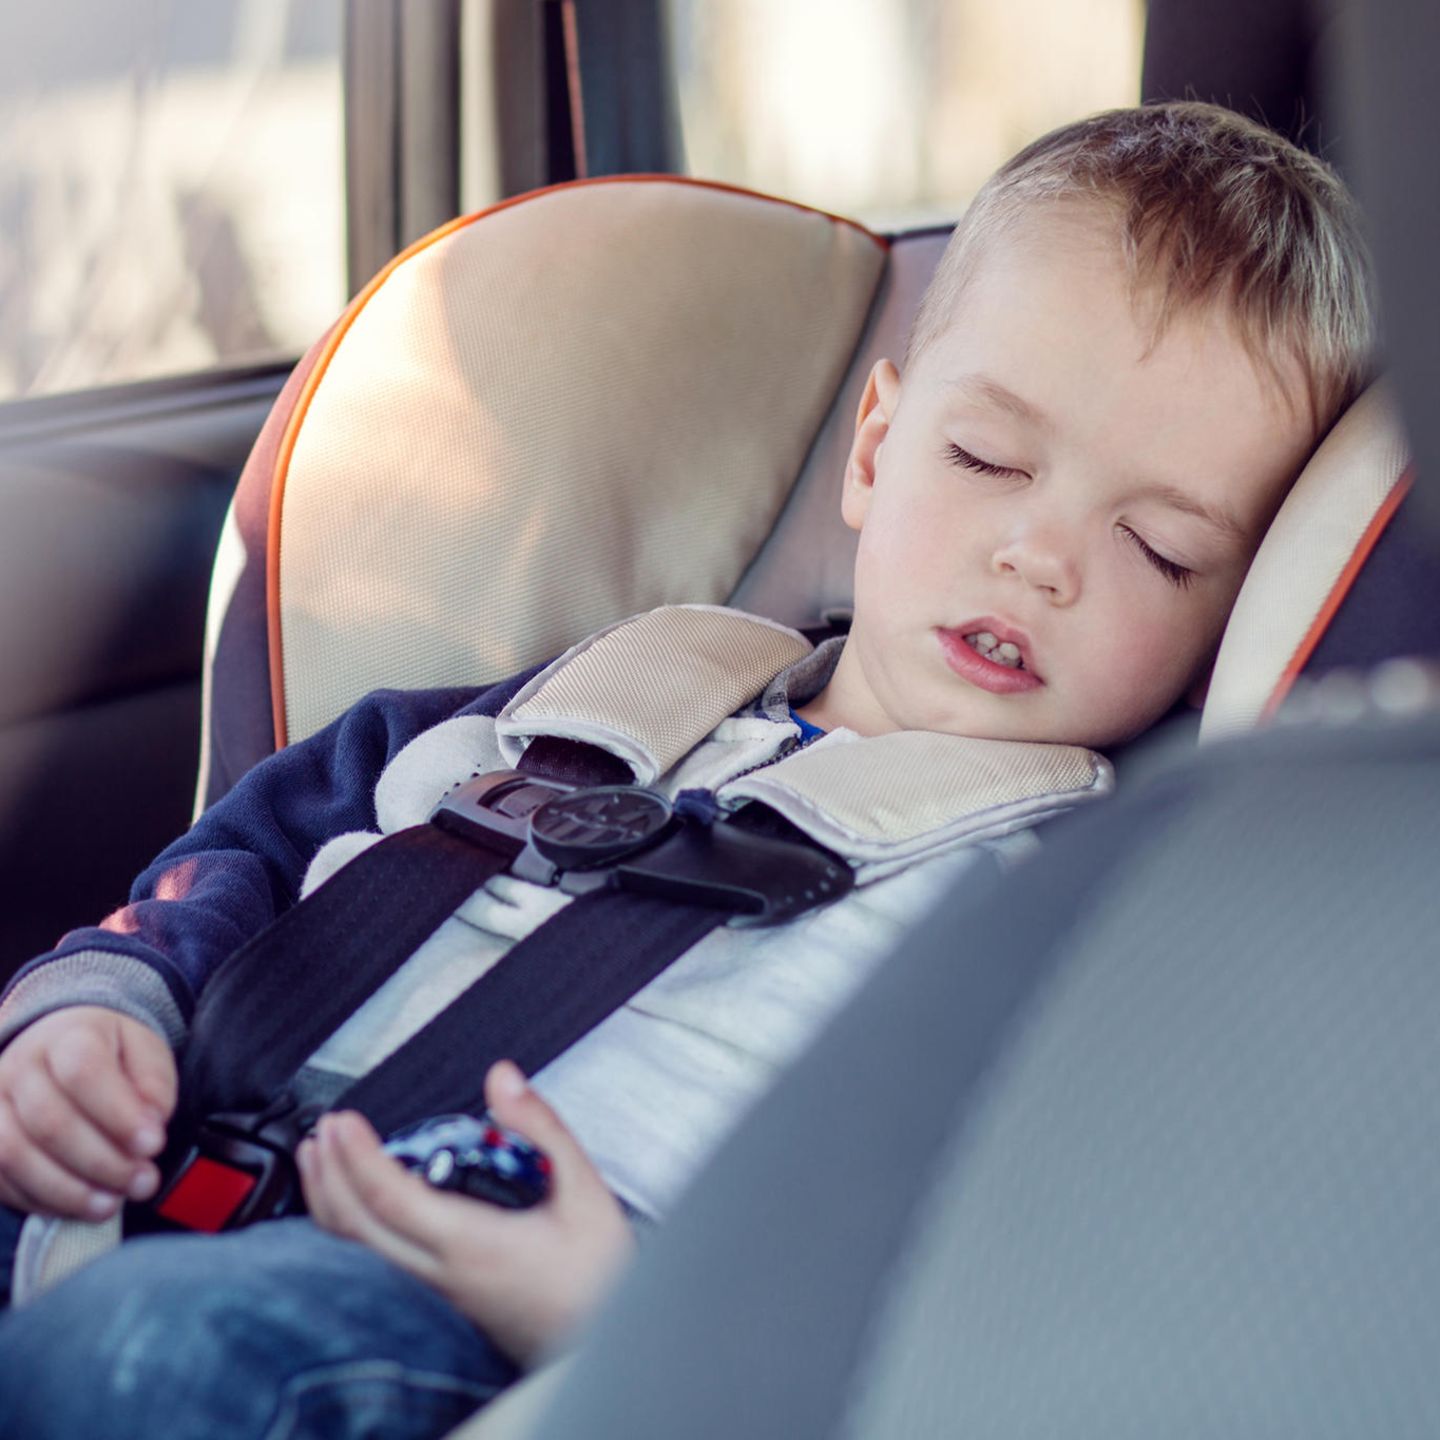 Aufregen: Gute Mütter lassen schlafende Kinder nicht im Auto